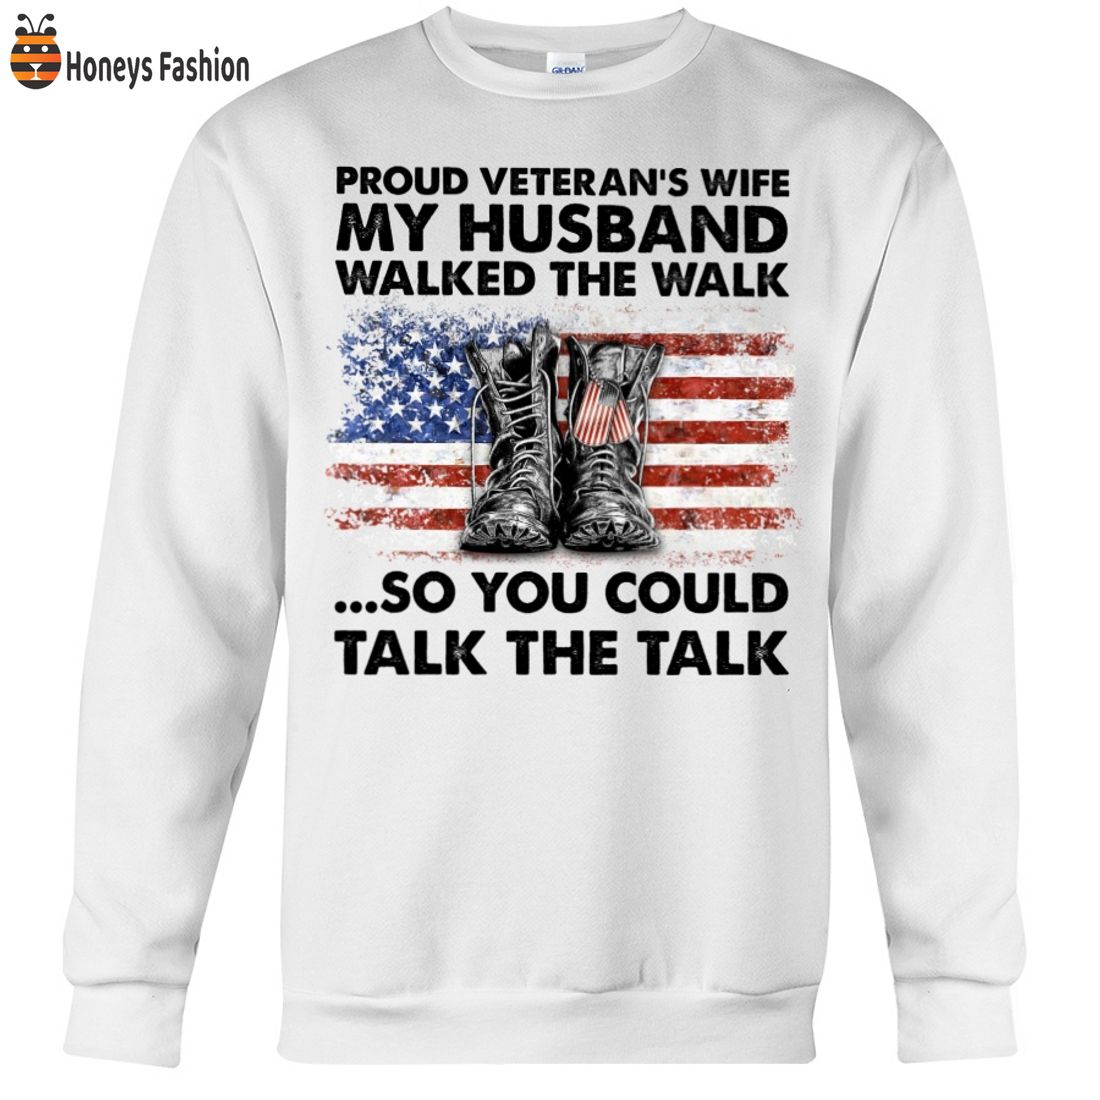 BEST SELLER Proud Veteran’s Wife My Husband Walked The Walk 2D Hoodie Tshirt